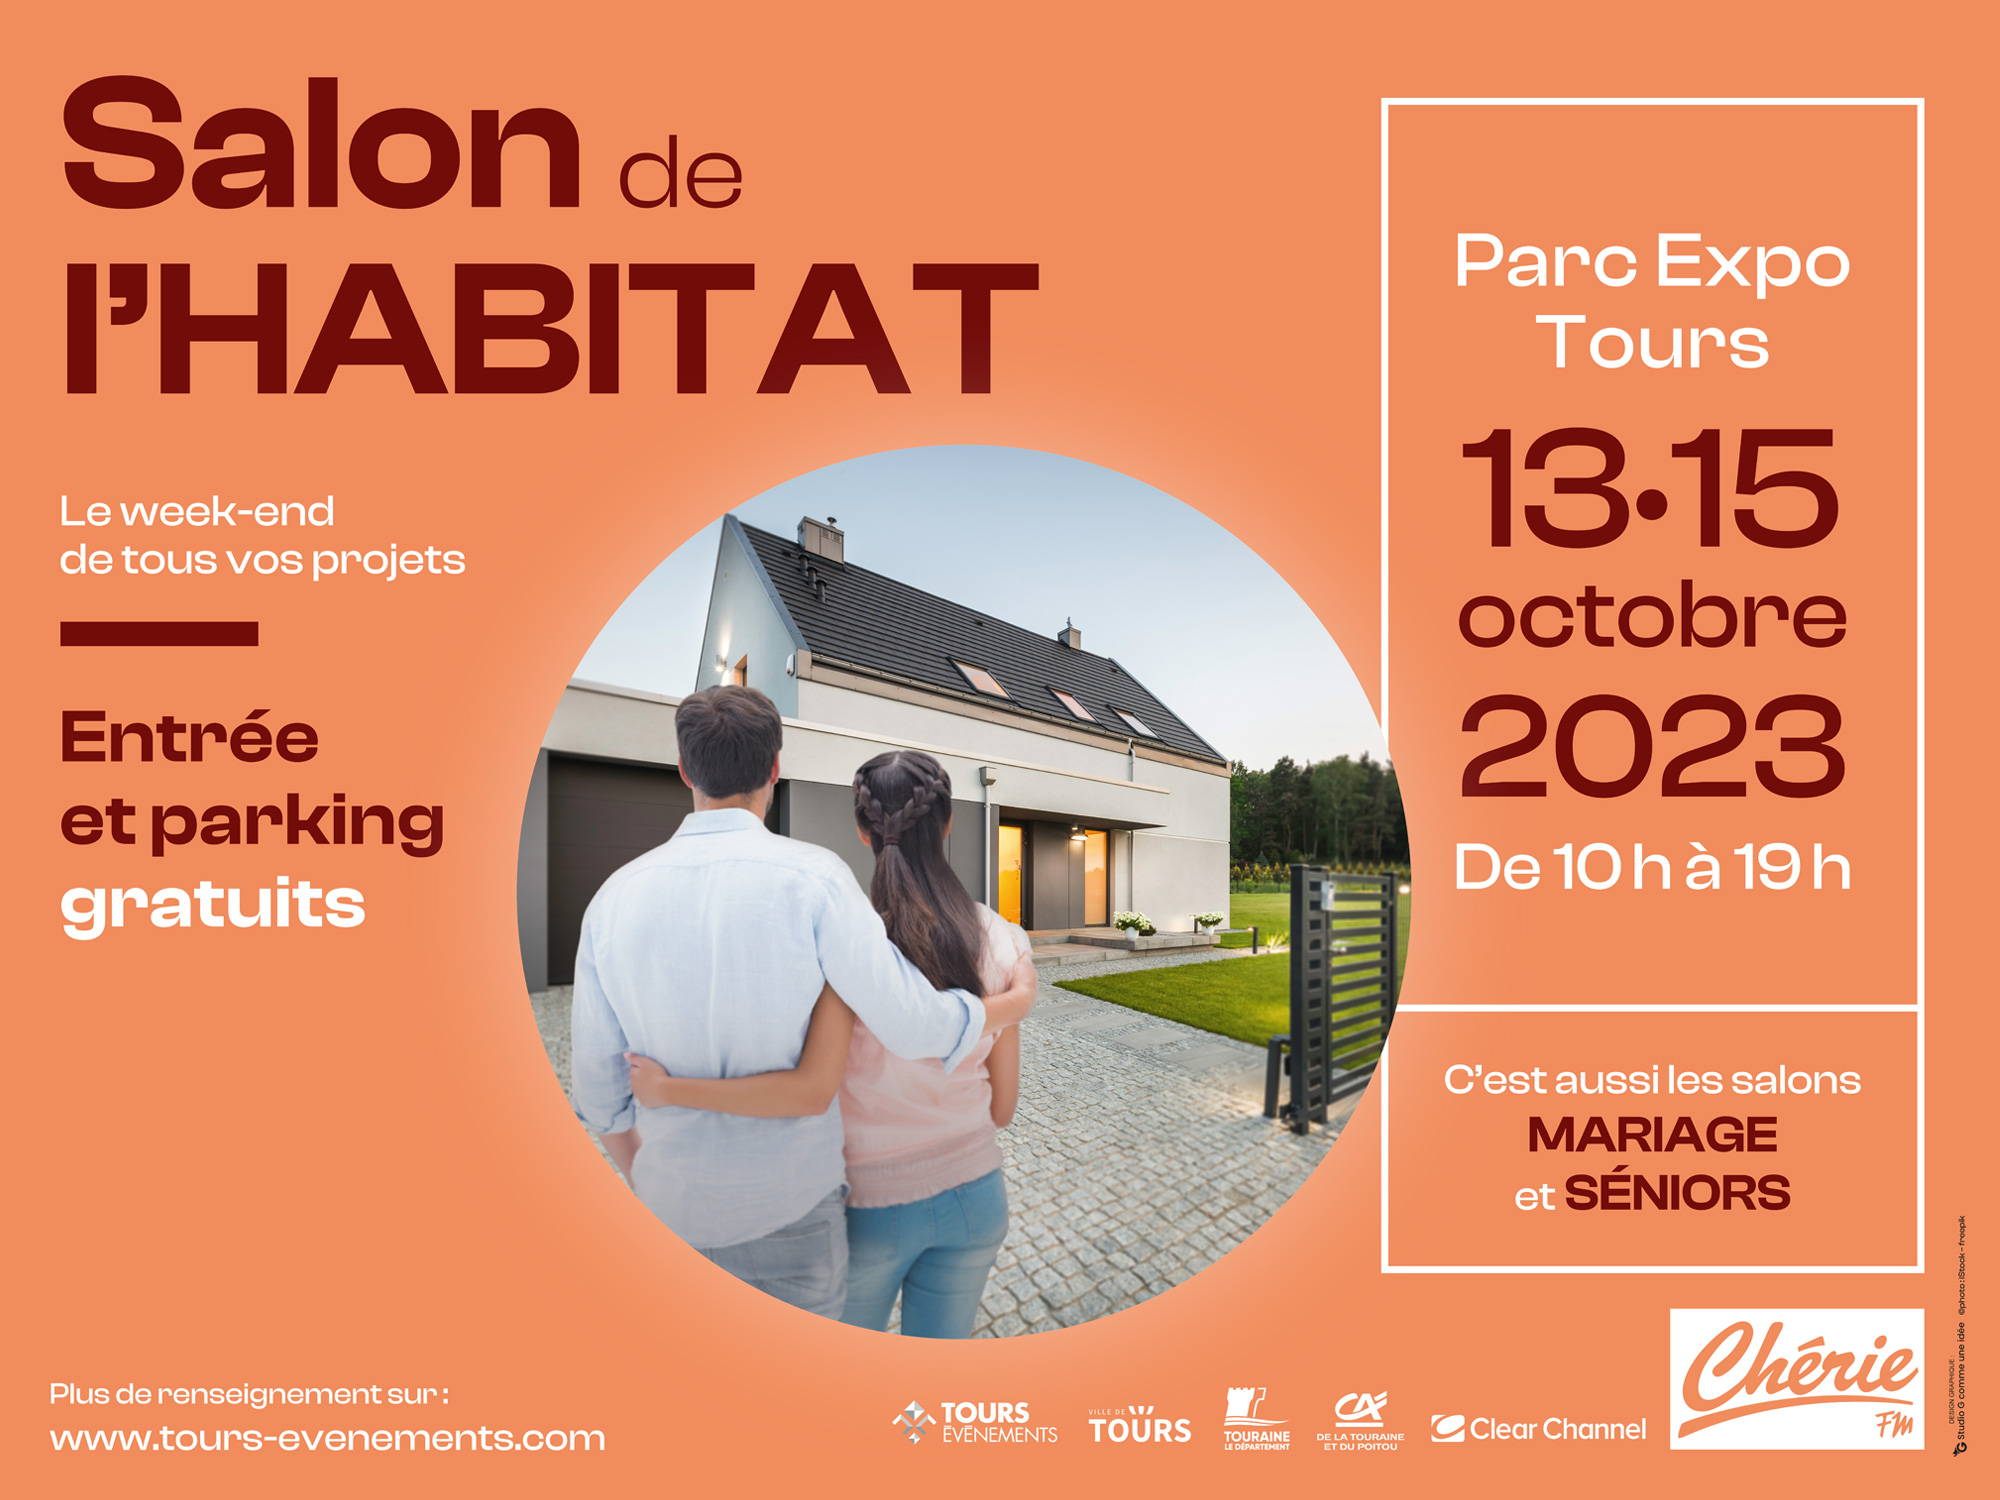 Le Salon de l'Habitat, au Parc Expo du 14 au 16 octobre 2022.